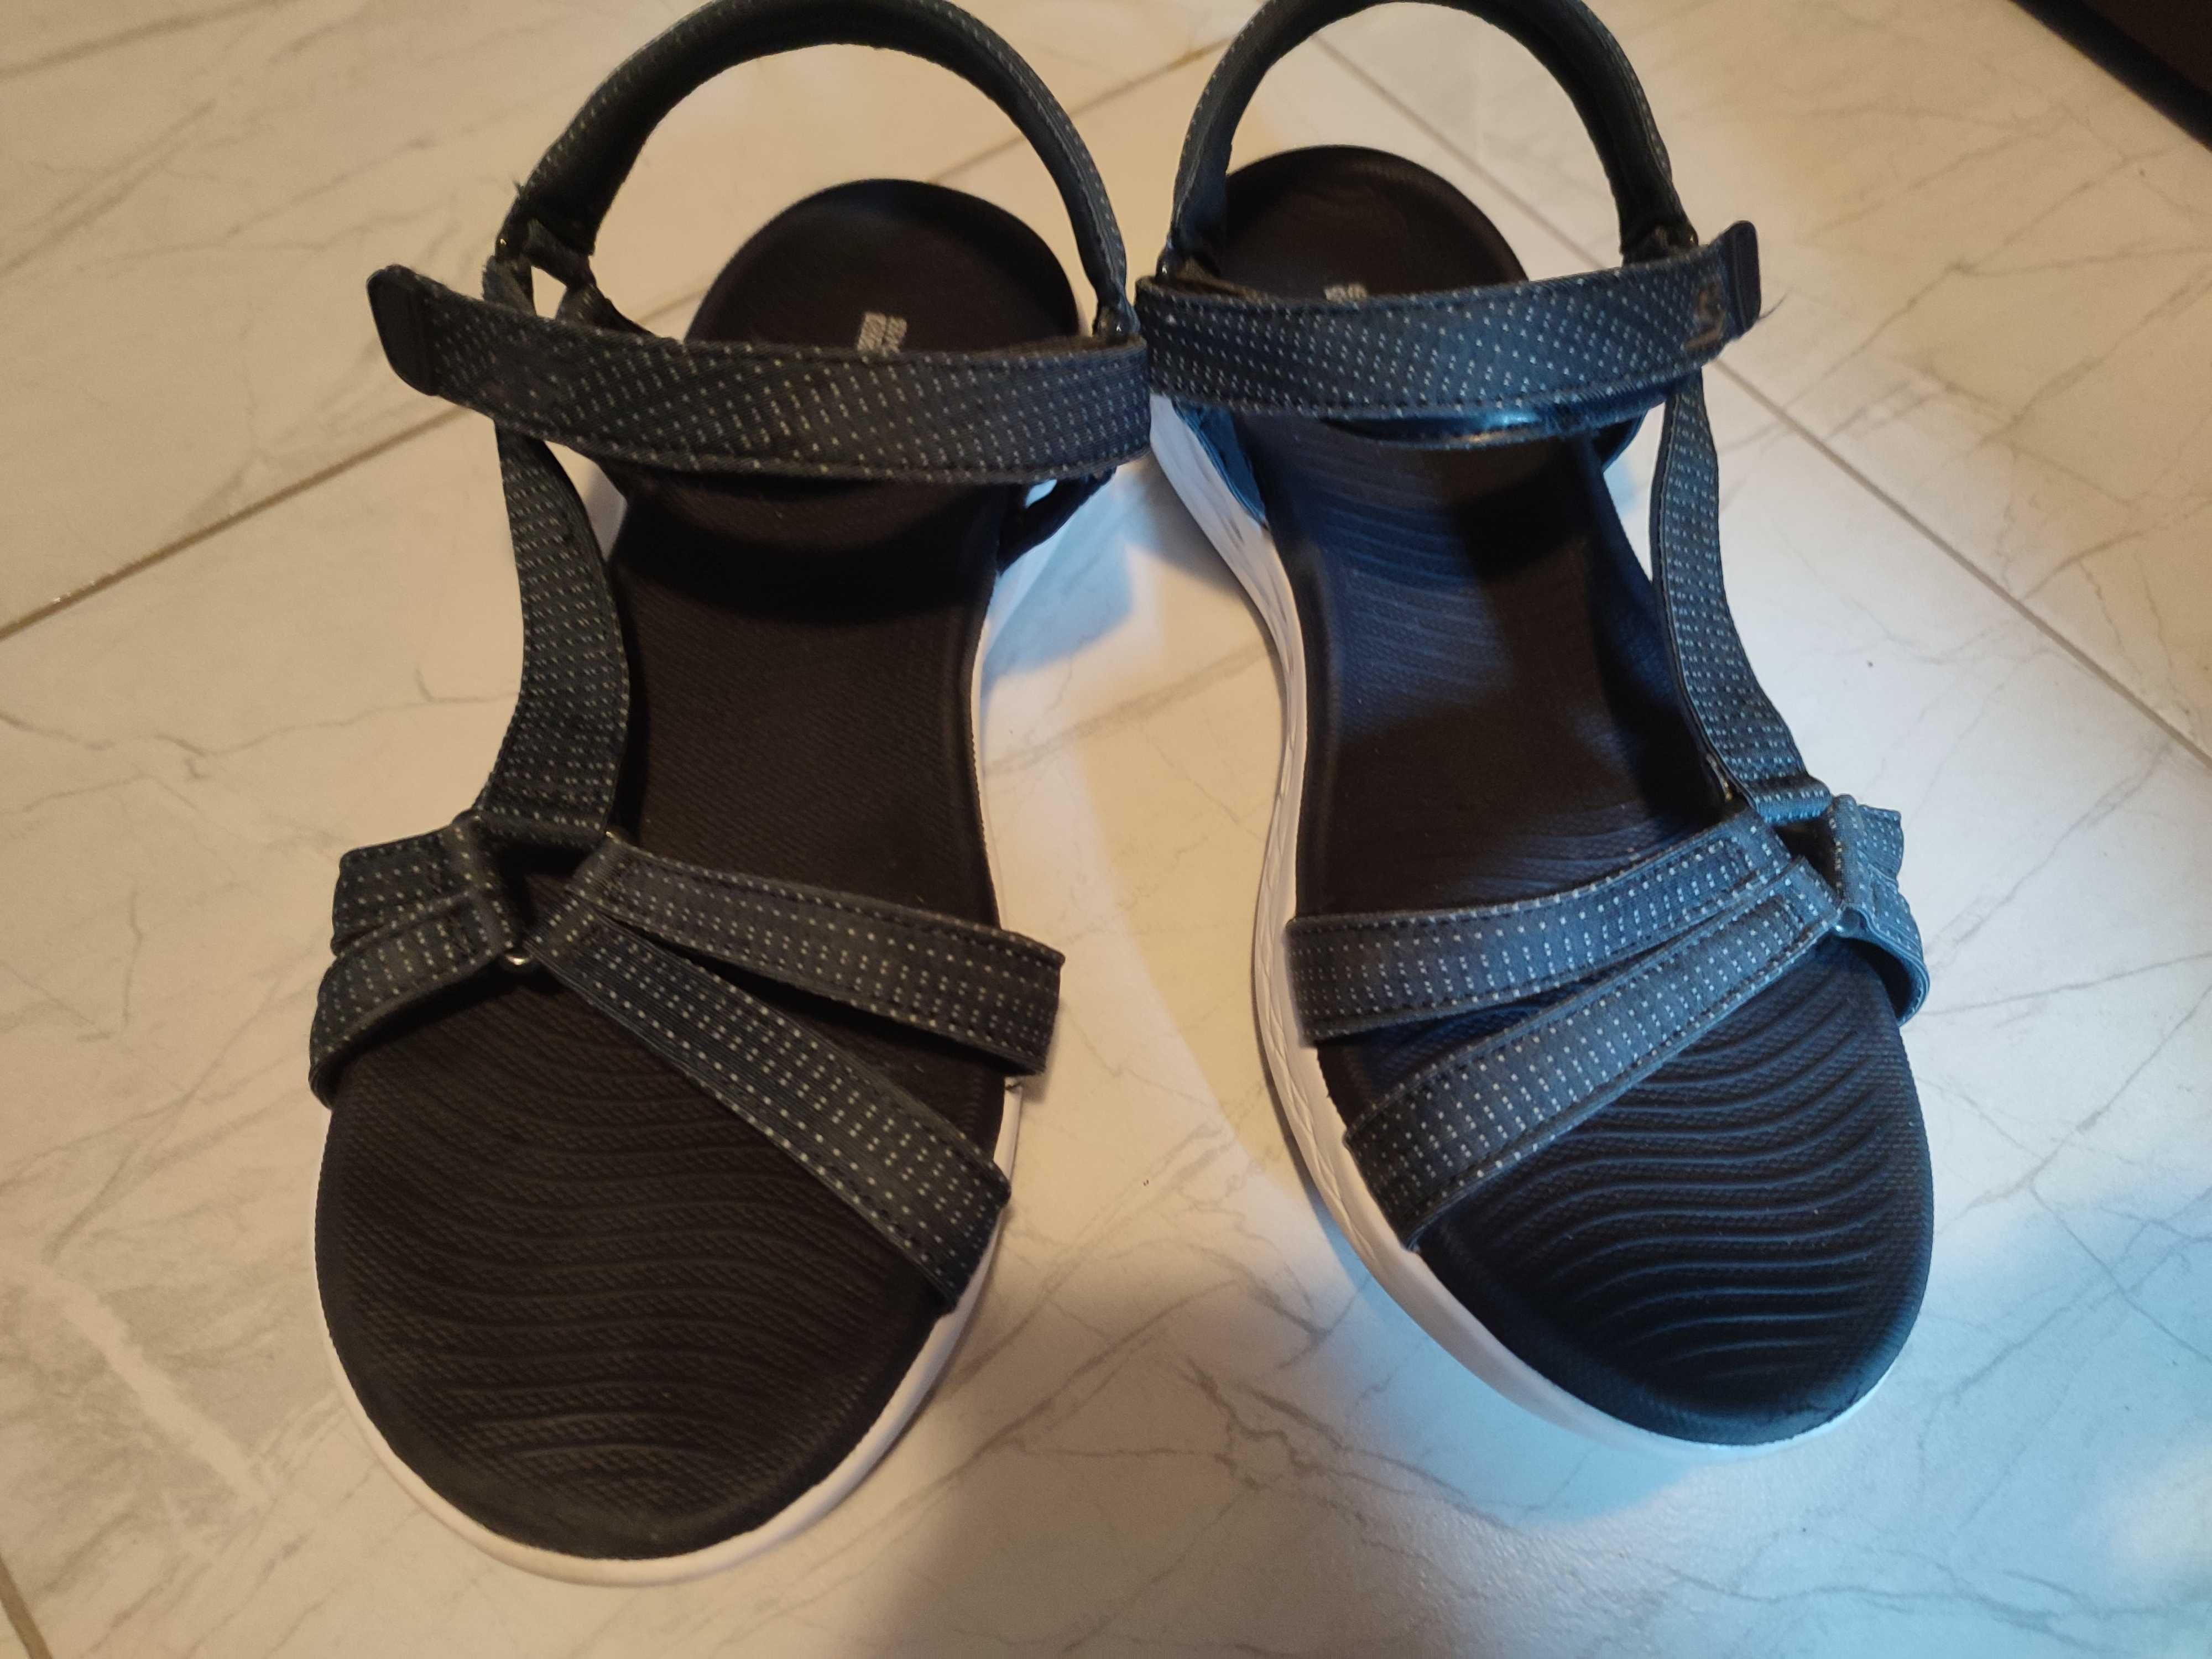 Оригинални сандали Skechers - тъмно сини - носени веднъж